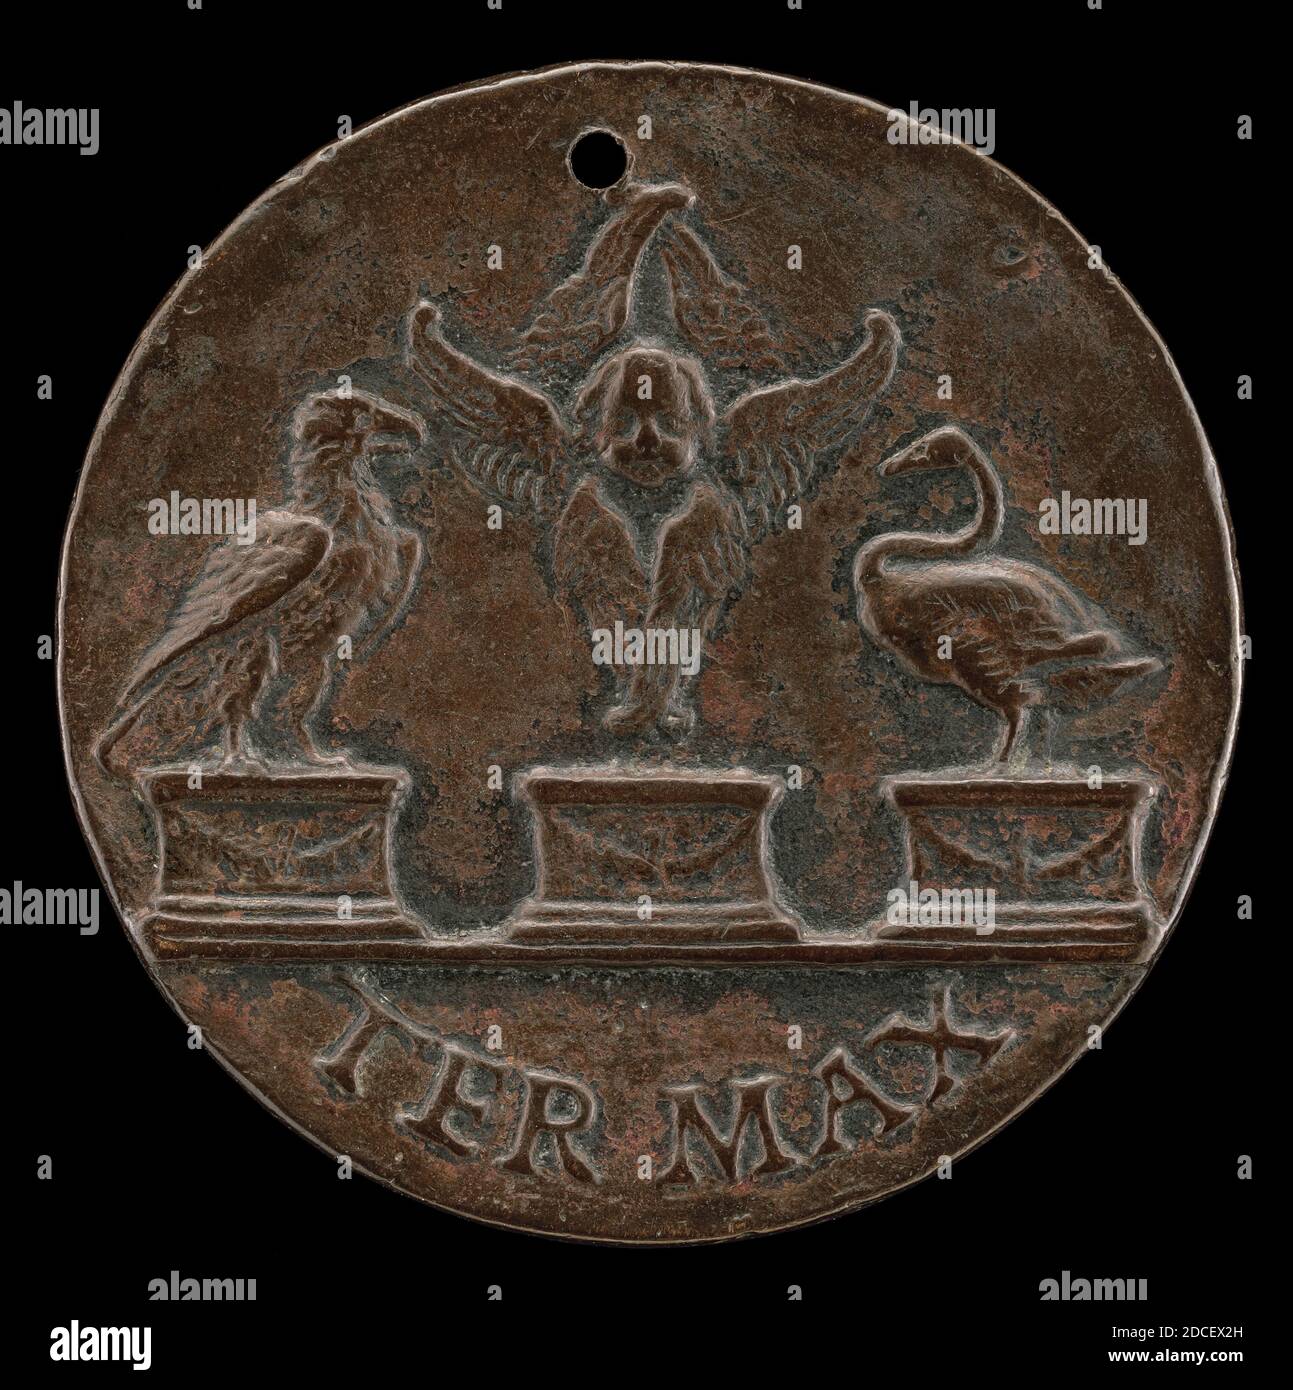 MEA, (Künstler), Mantua, aktive c. 1510 - 1520, Cherub, Swan und Eagle, c. 1513, Bronze, Gesamtdurchmesser: 3.93 cm (1 9/16 Zoll), Bruttogewicht: 21.88 g (0.048 lb.), Achse: 12:00 Stockfoto